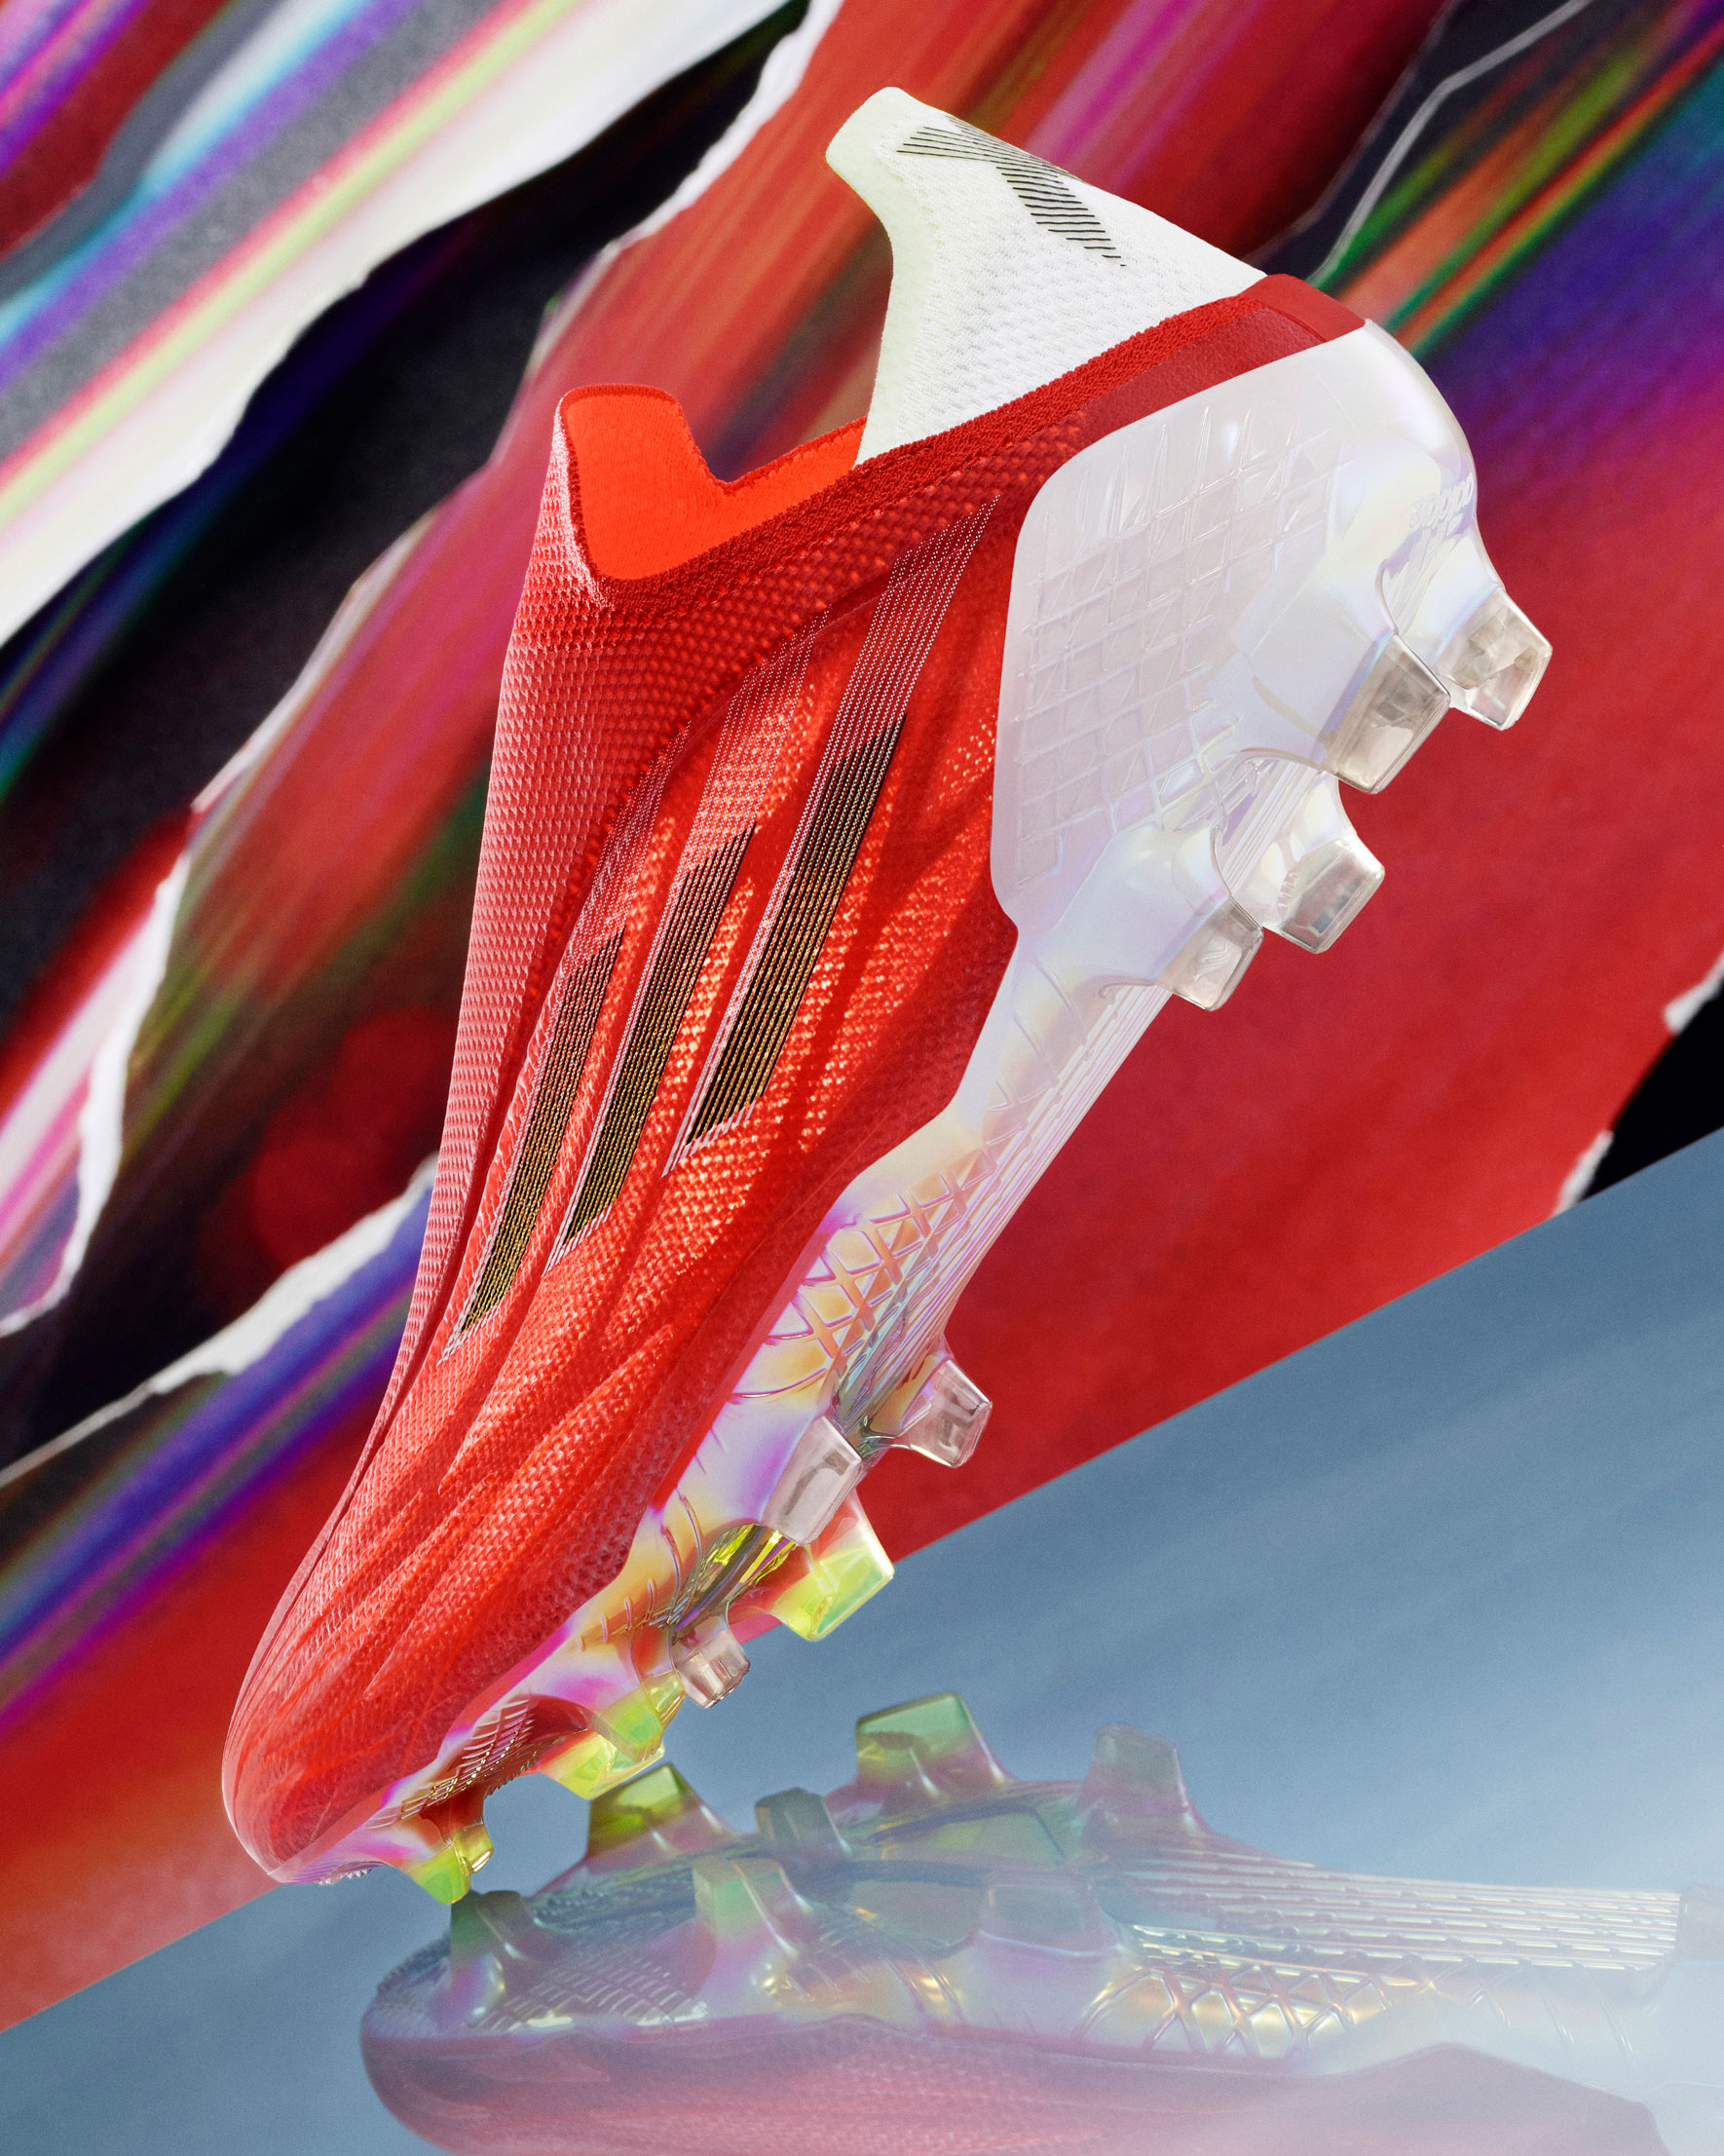 阿迪达斯发布限量版X99.1 - Adidas_阿迪达斯足球鞋 - SoccerBible中文站_足球鞋_PDS情报站